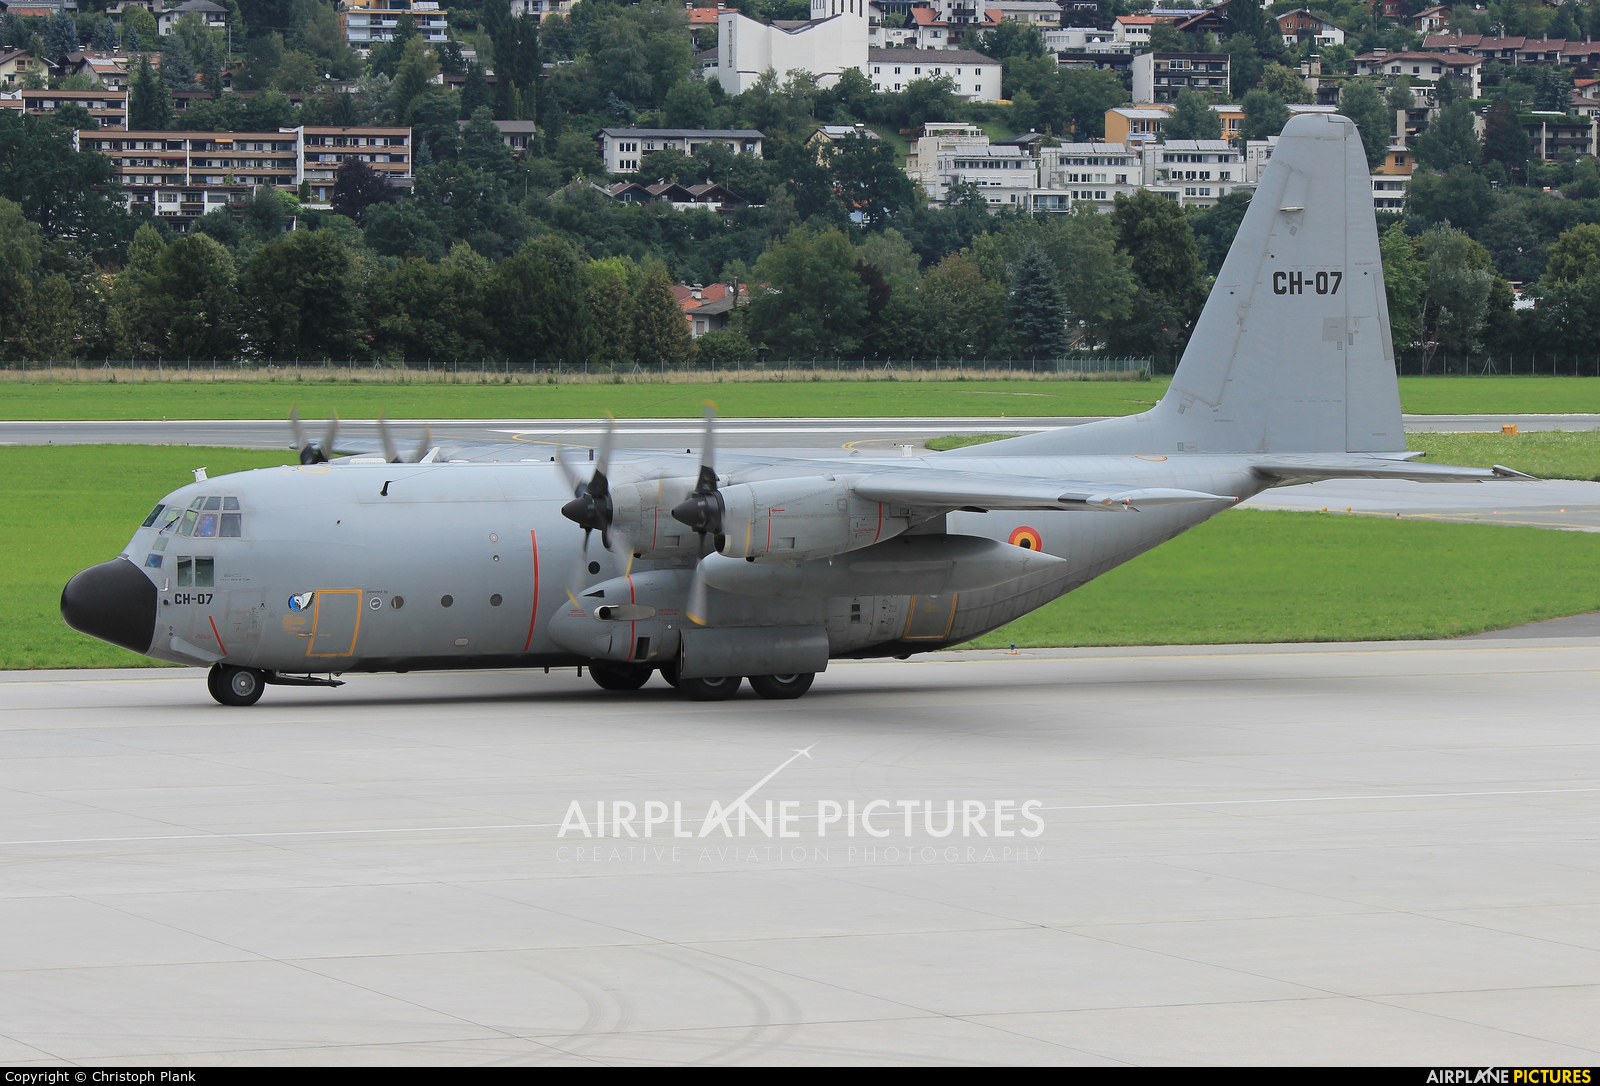 Belgium - Air Force CH-07 aircraft at Innsbruck